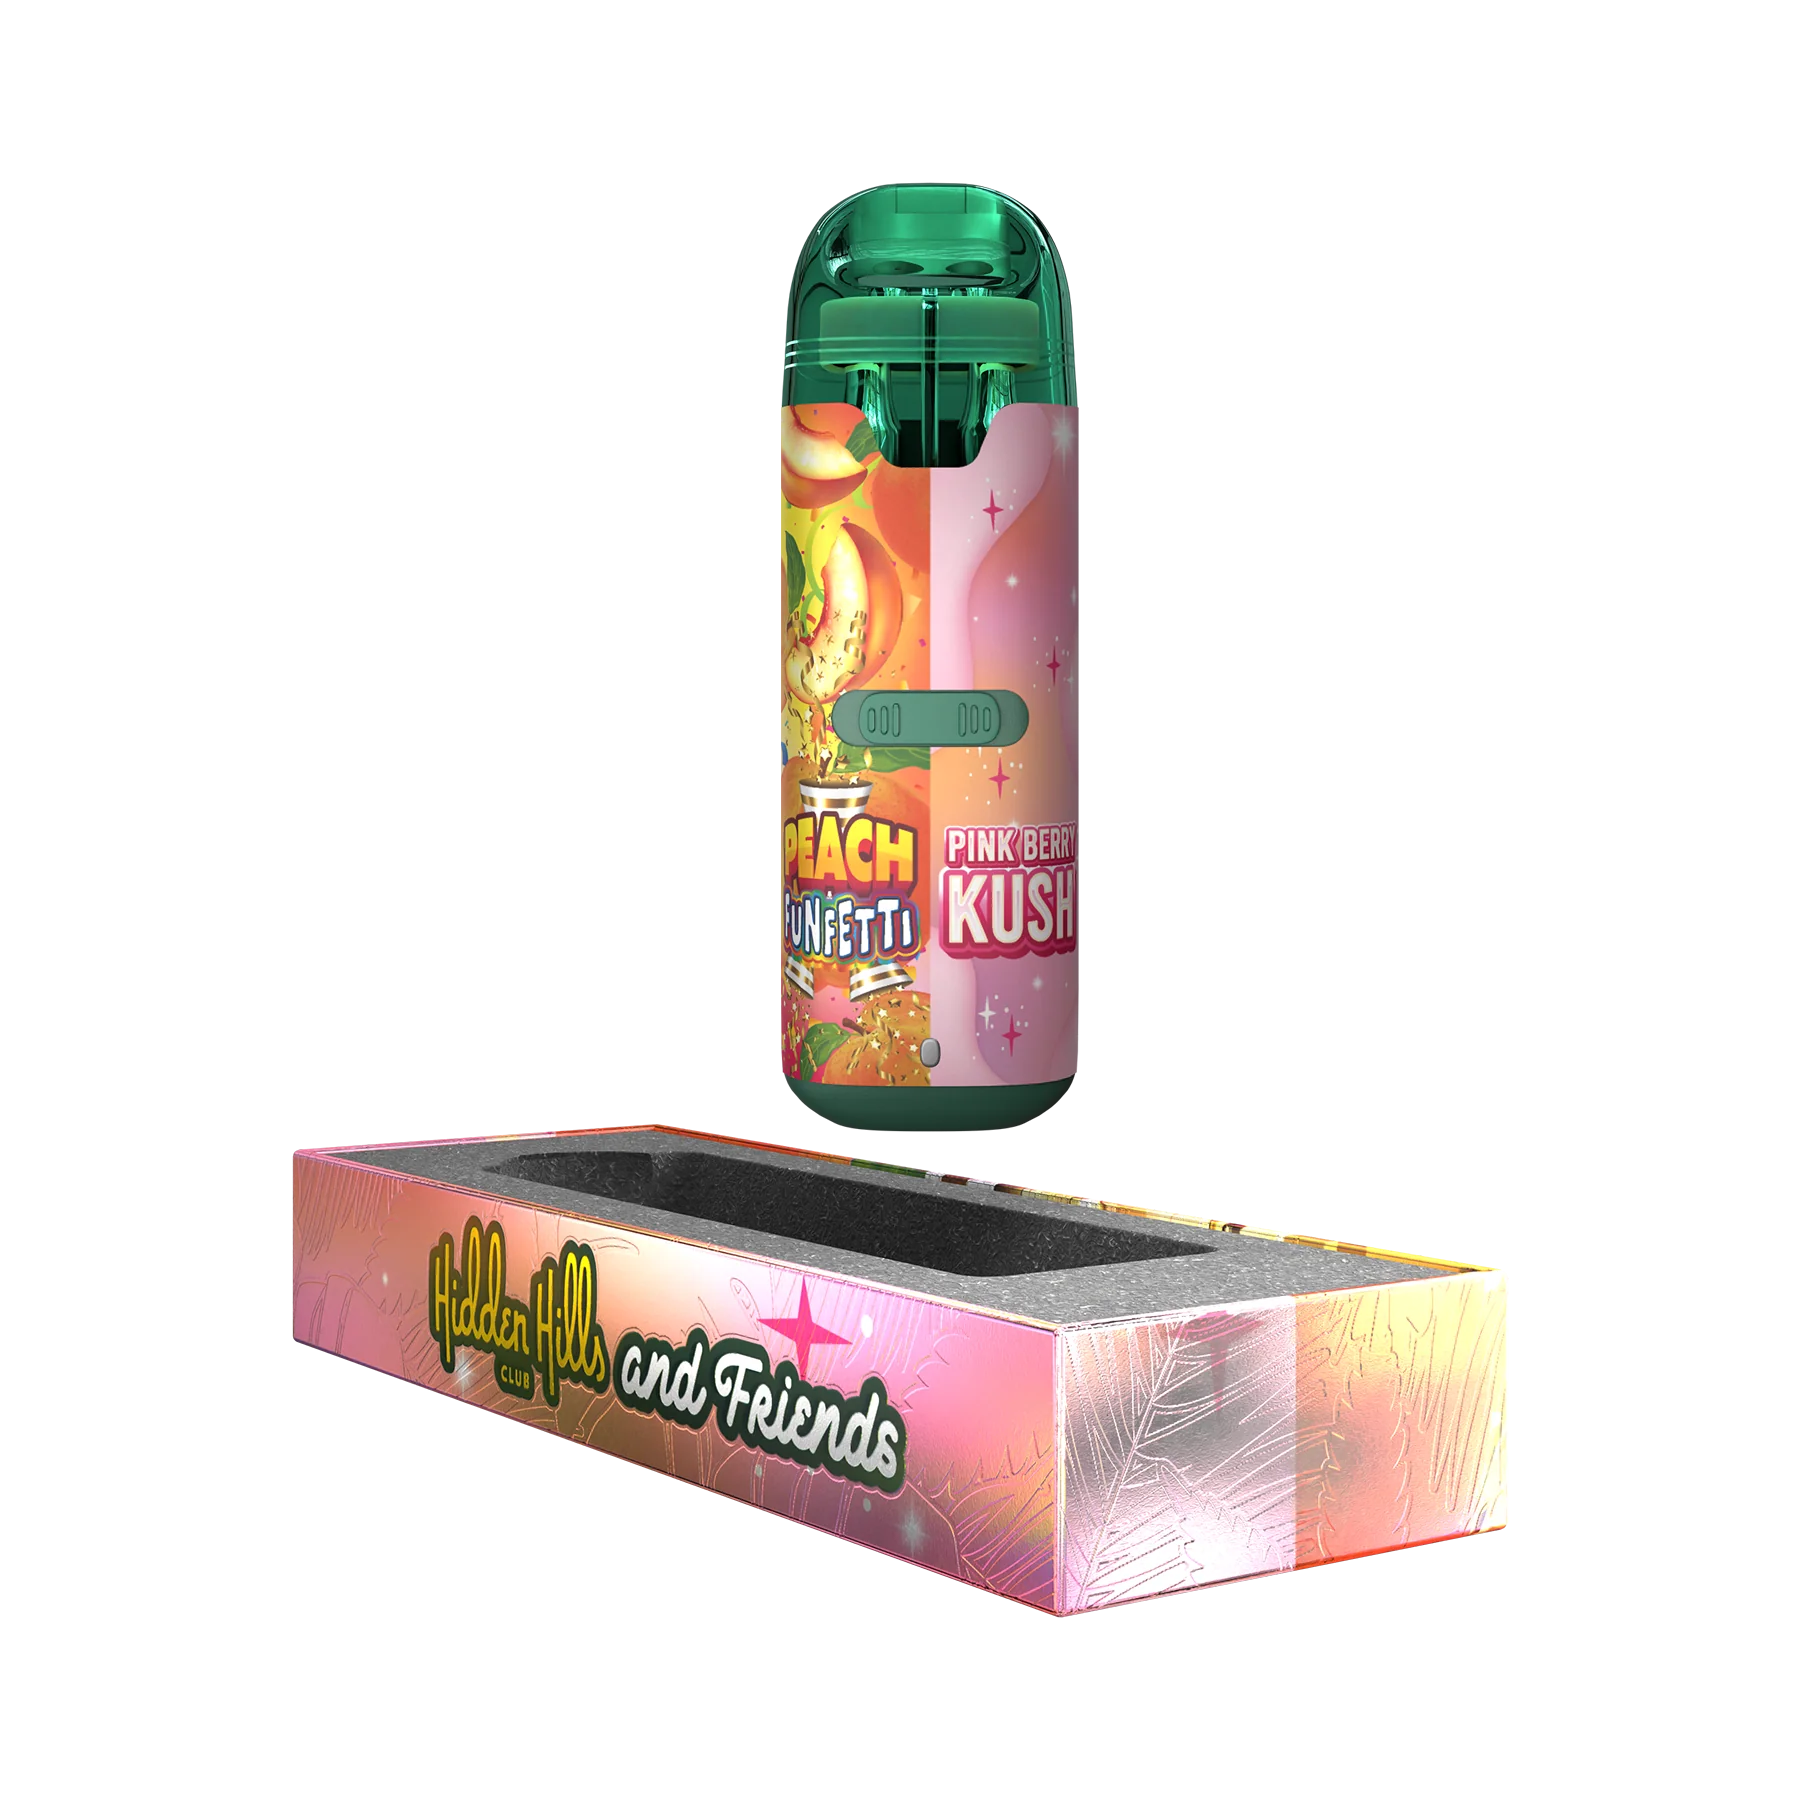 Hidden Hills Dual Flavor THC-A Disposable Vape Hidden Hills Punch Funfetti / Pink Berry Kush  